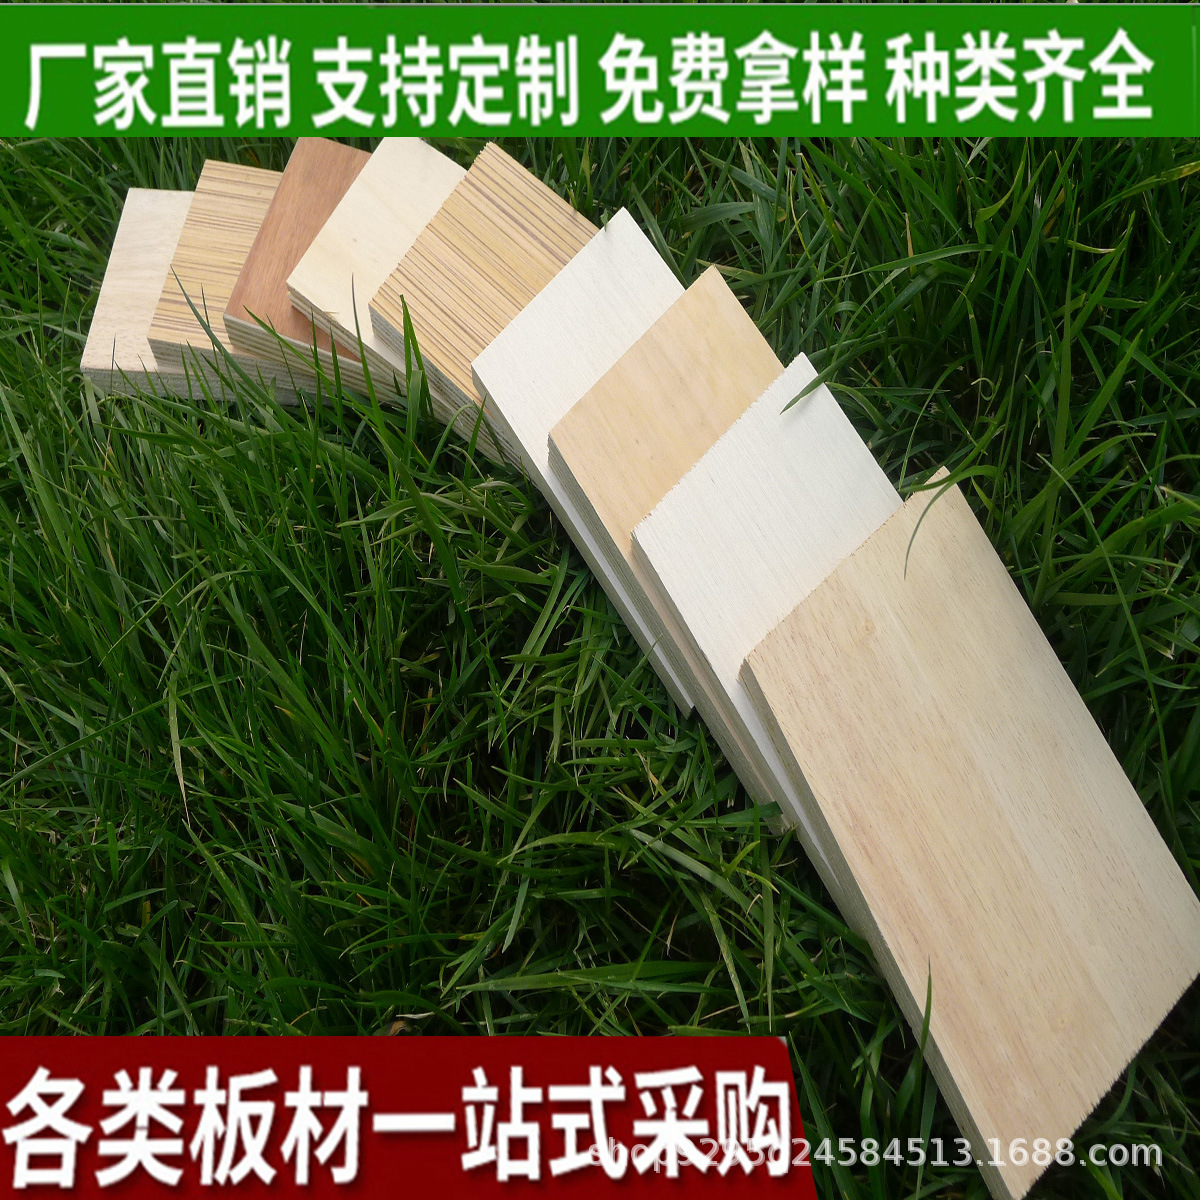 山东临沂厂家直销杨木包装板材 多层胶合板 三合板2.3MM 宝丽板